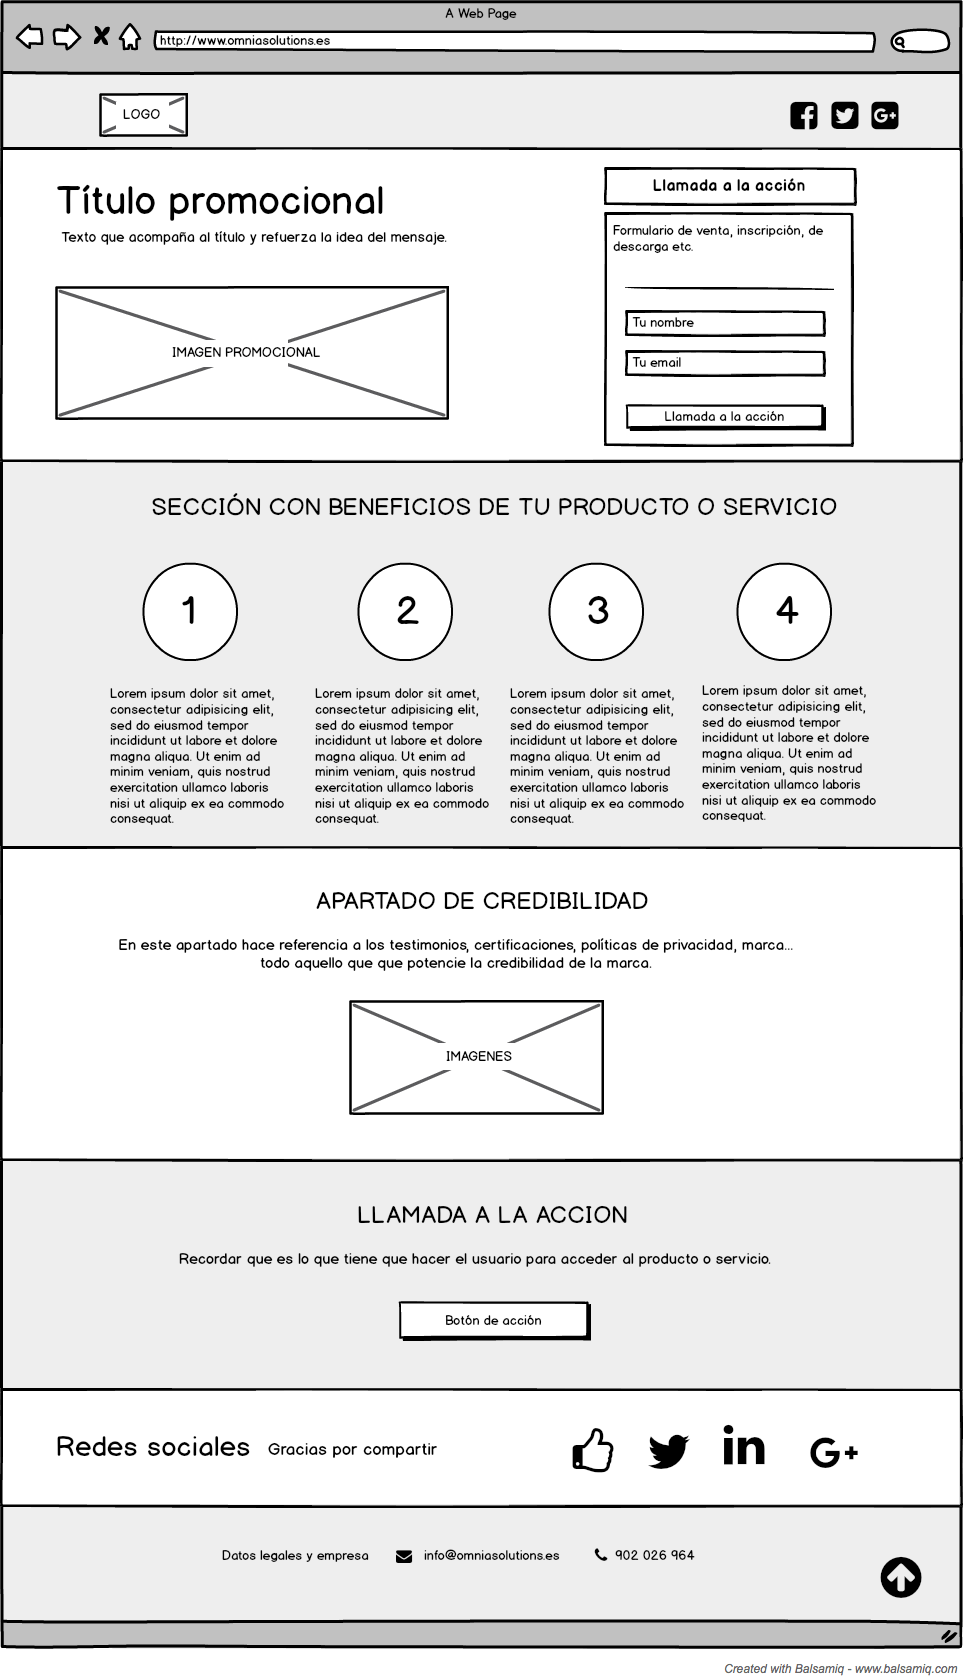 Elementos de diseño de una Landing Page